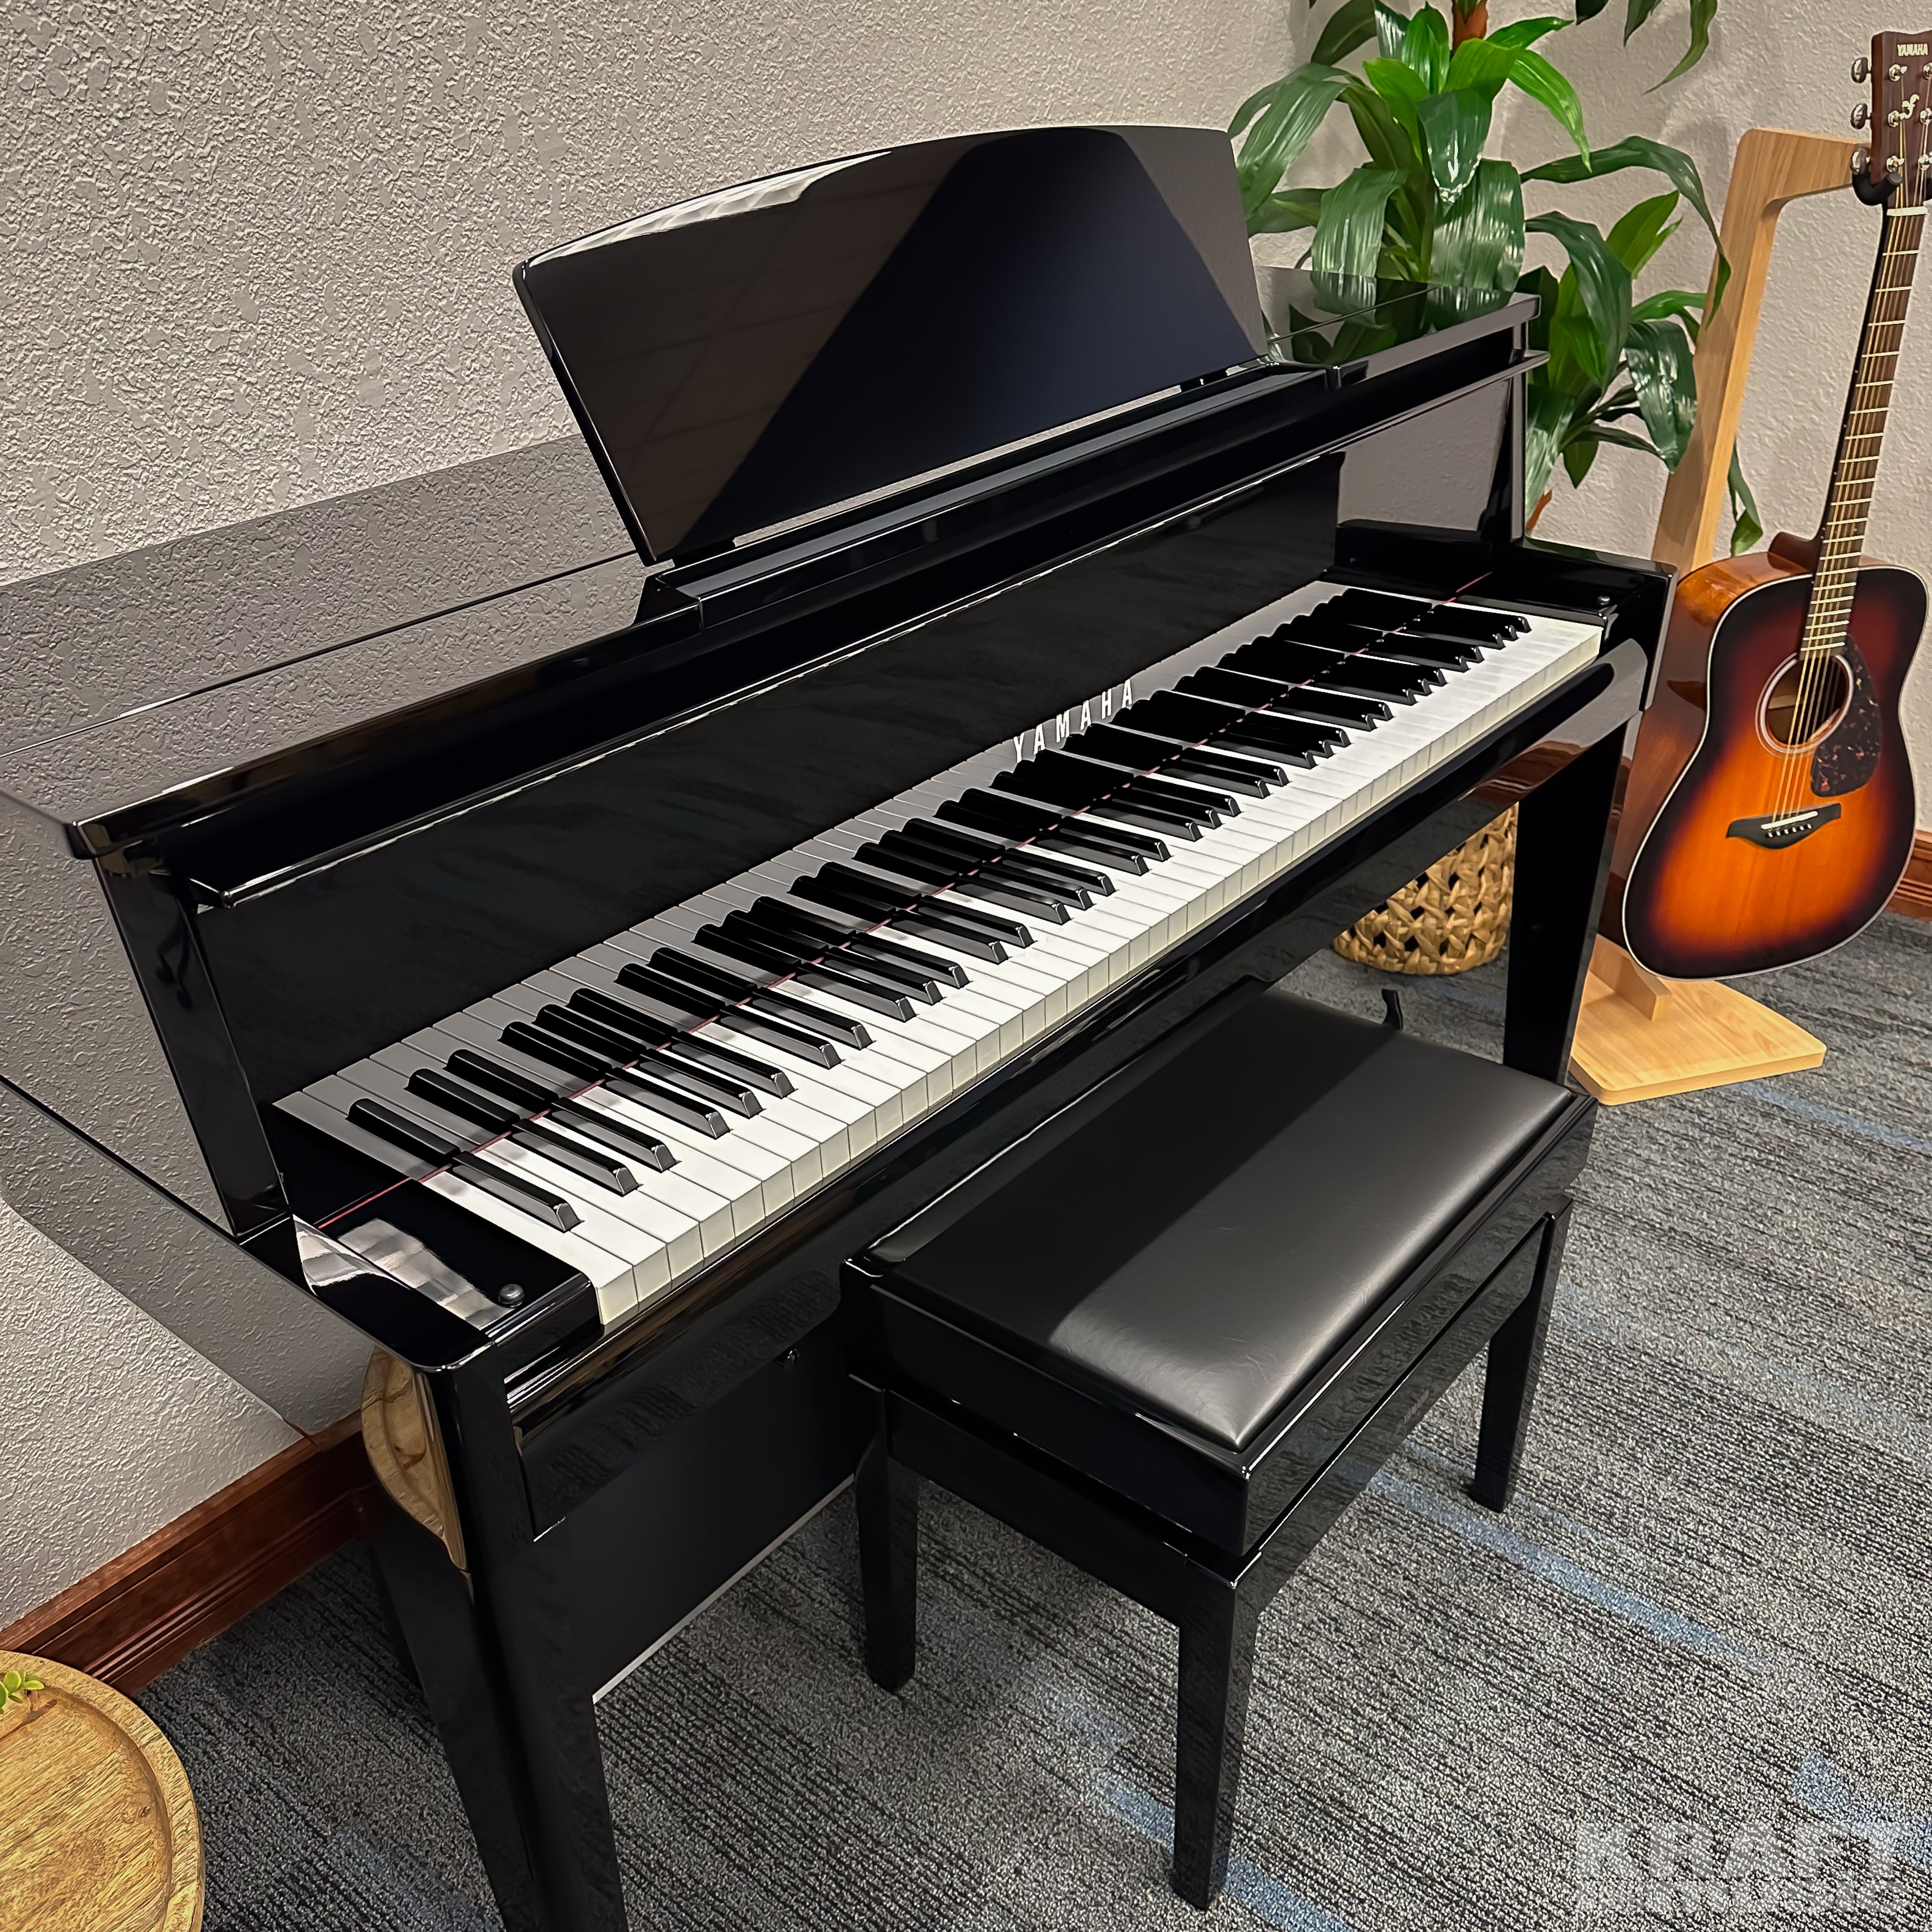 Yamaha AvantGrand N2 Hybrid Piano - Polished Ebony - facing right in a stylish room